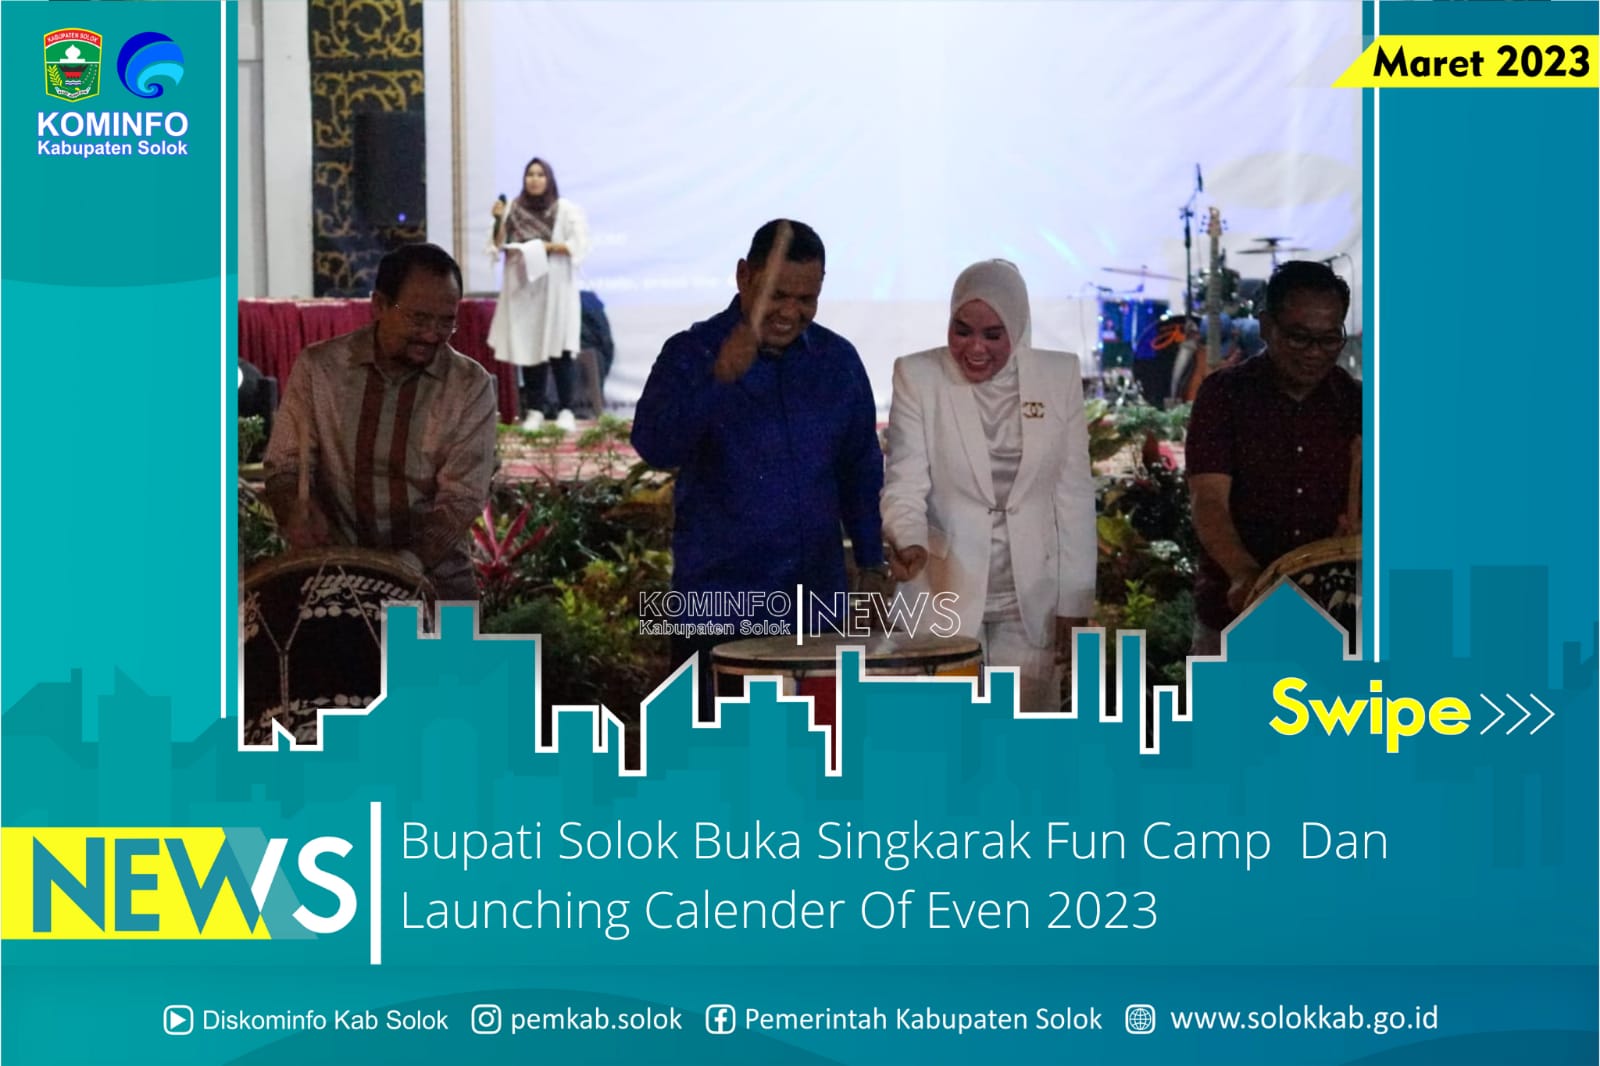 Bupati Solok Buka Singkarak Fun Camp dan Launching Calender of Even 2023